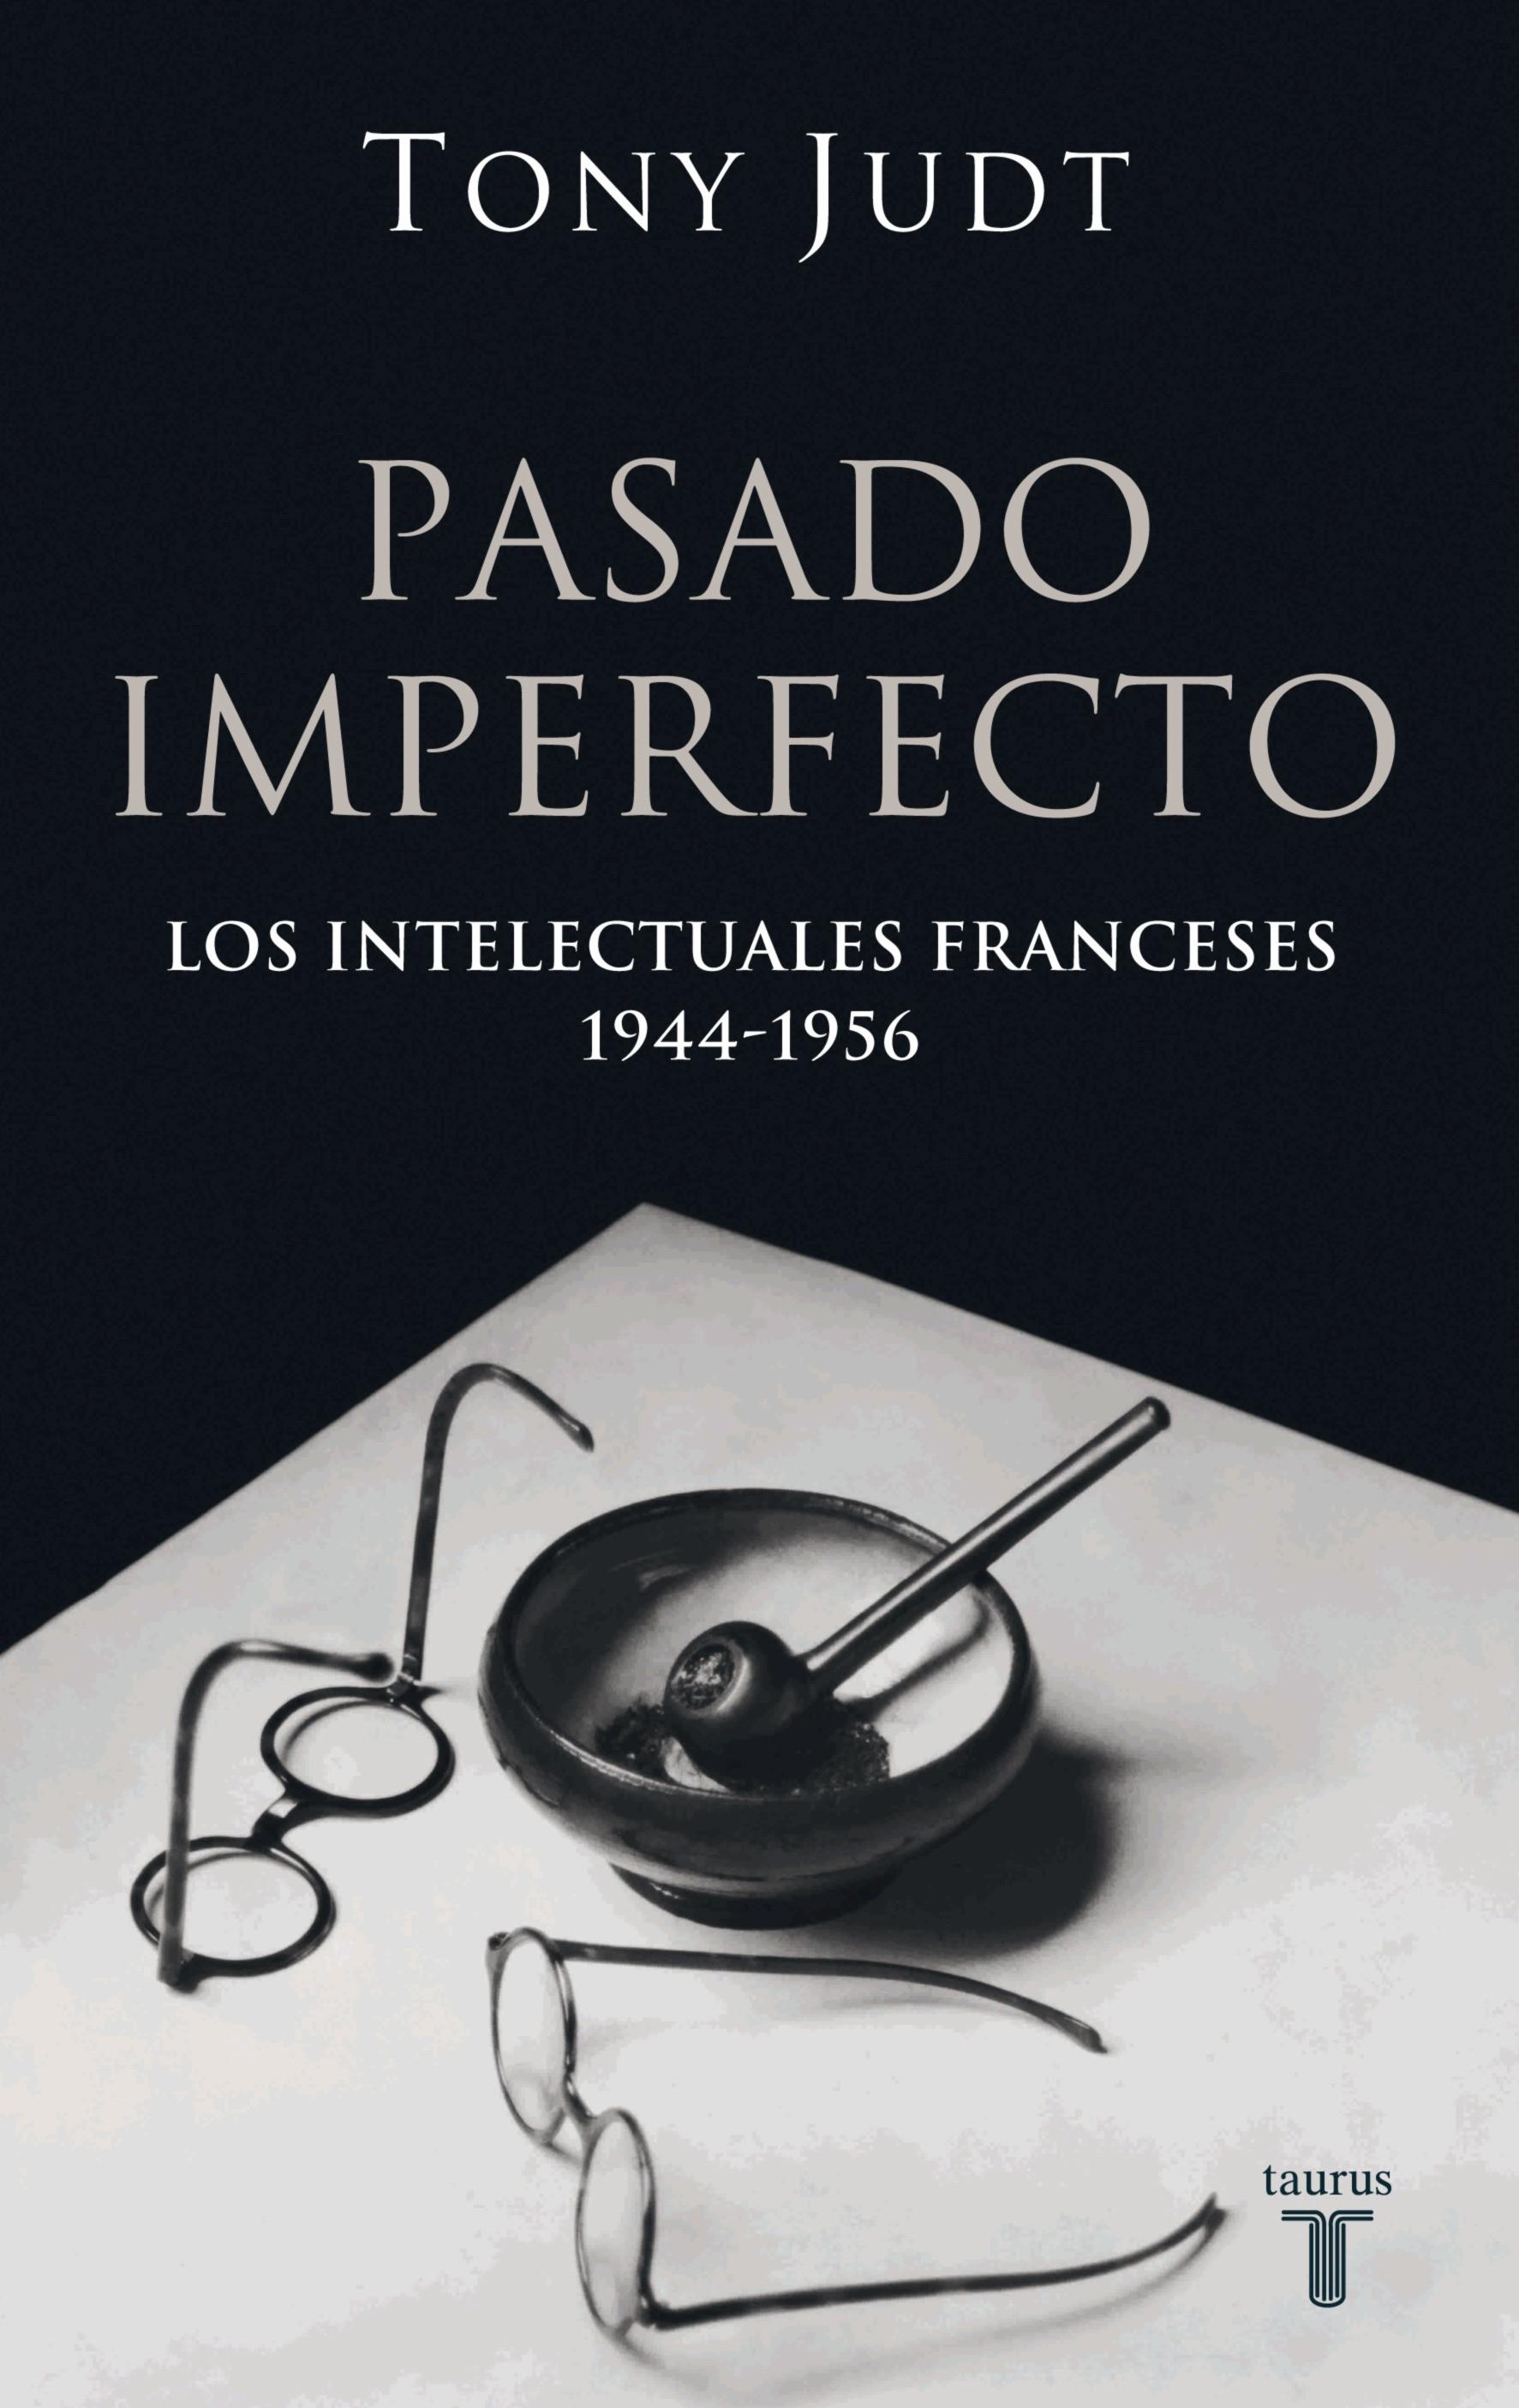 Pasado imperfecto "Los intelectuales franceses 1944-1956"